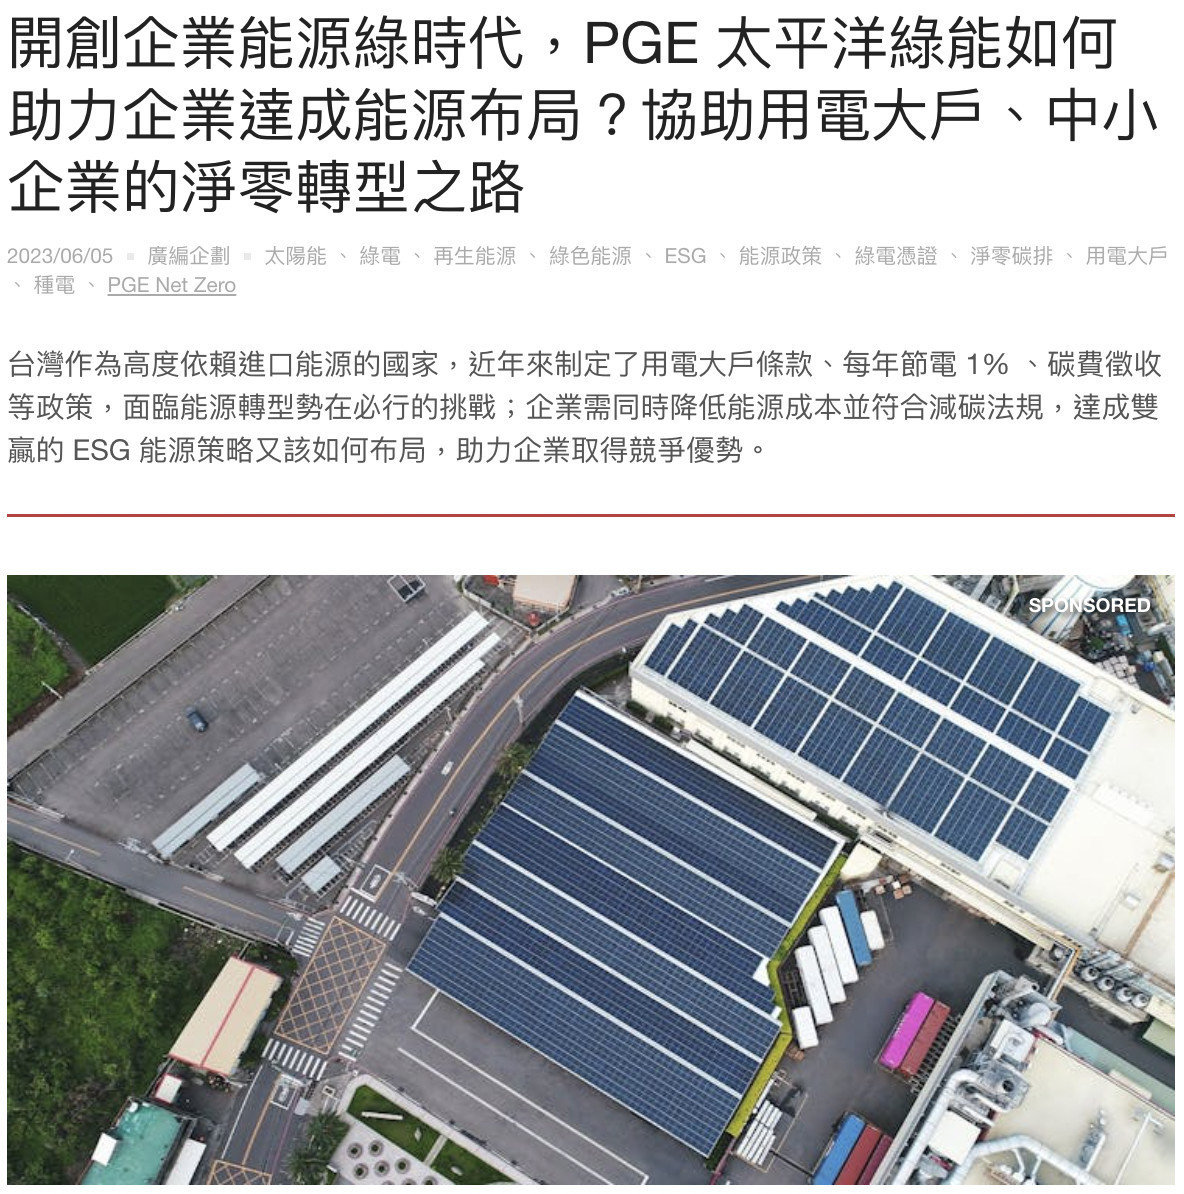 【媒體報導｜INSIDE】開能源綠時代，PGE 太平洋綠能如何助力企業ESG達成能源布局？協助用電大戶、中小企業的淨零轉型之路